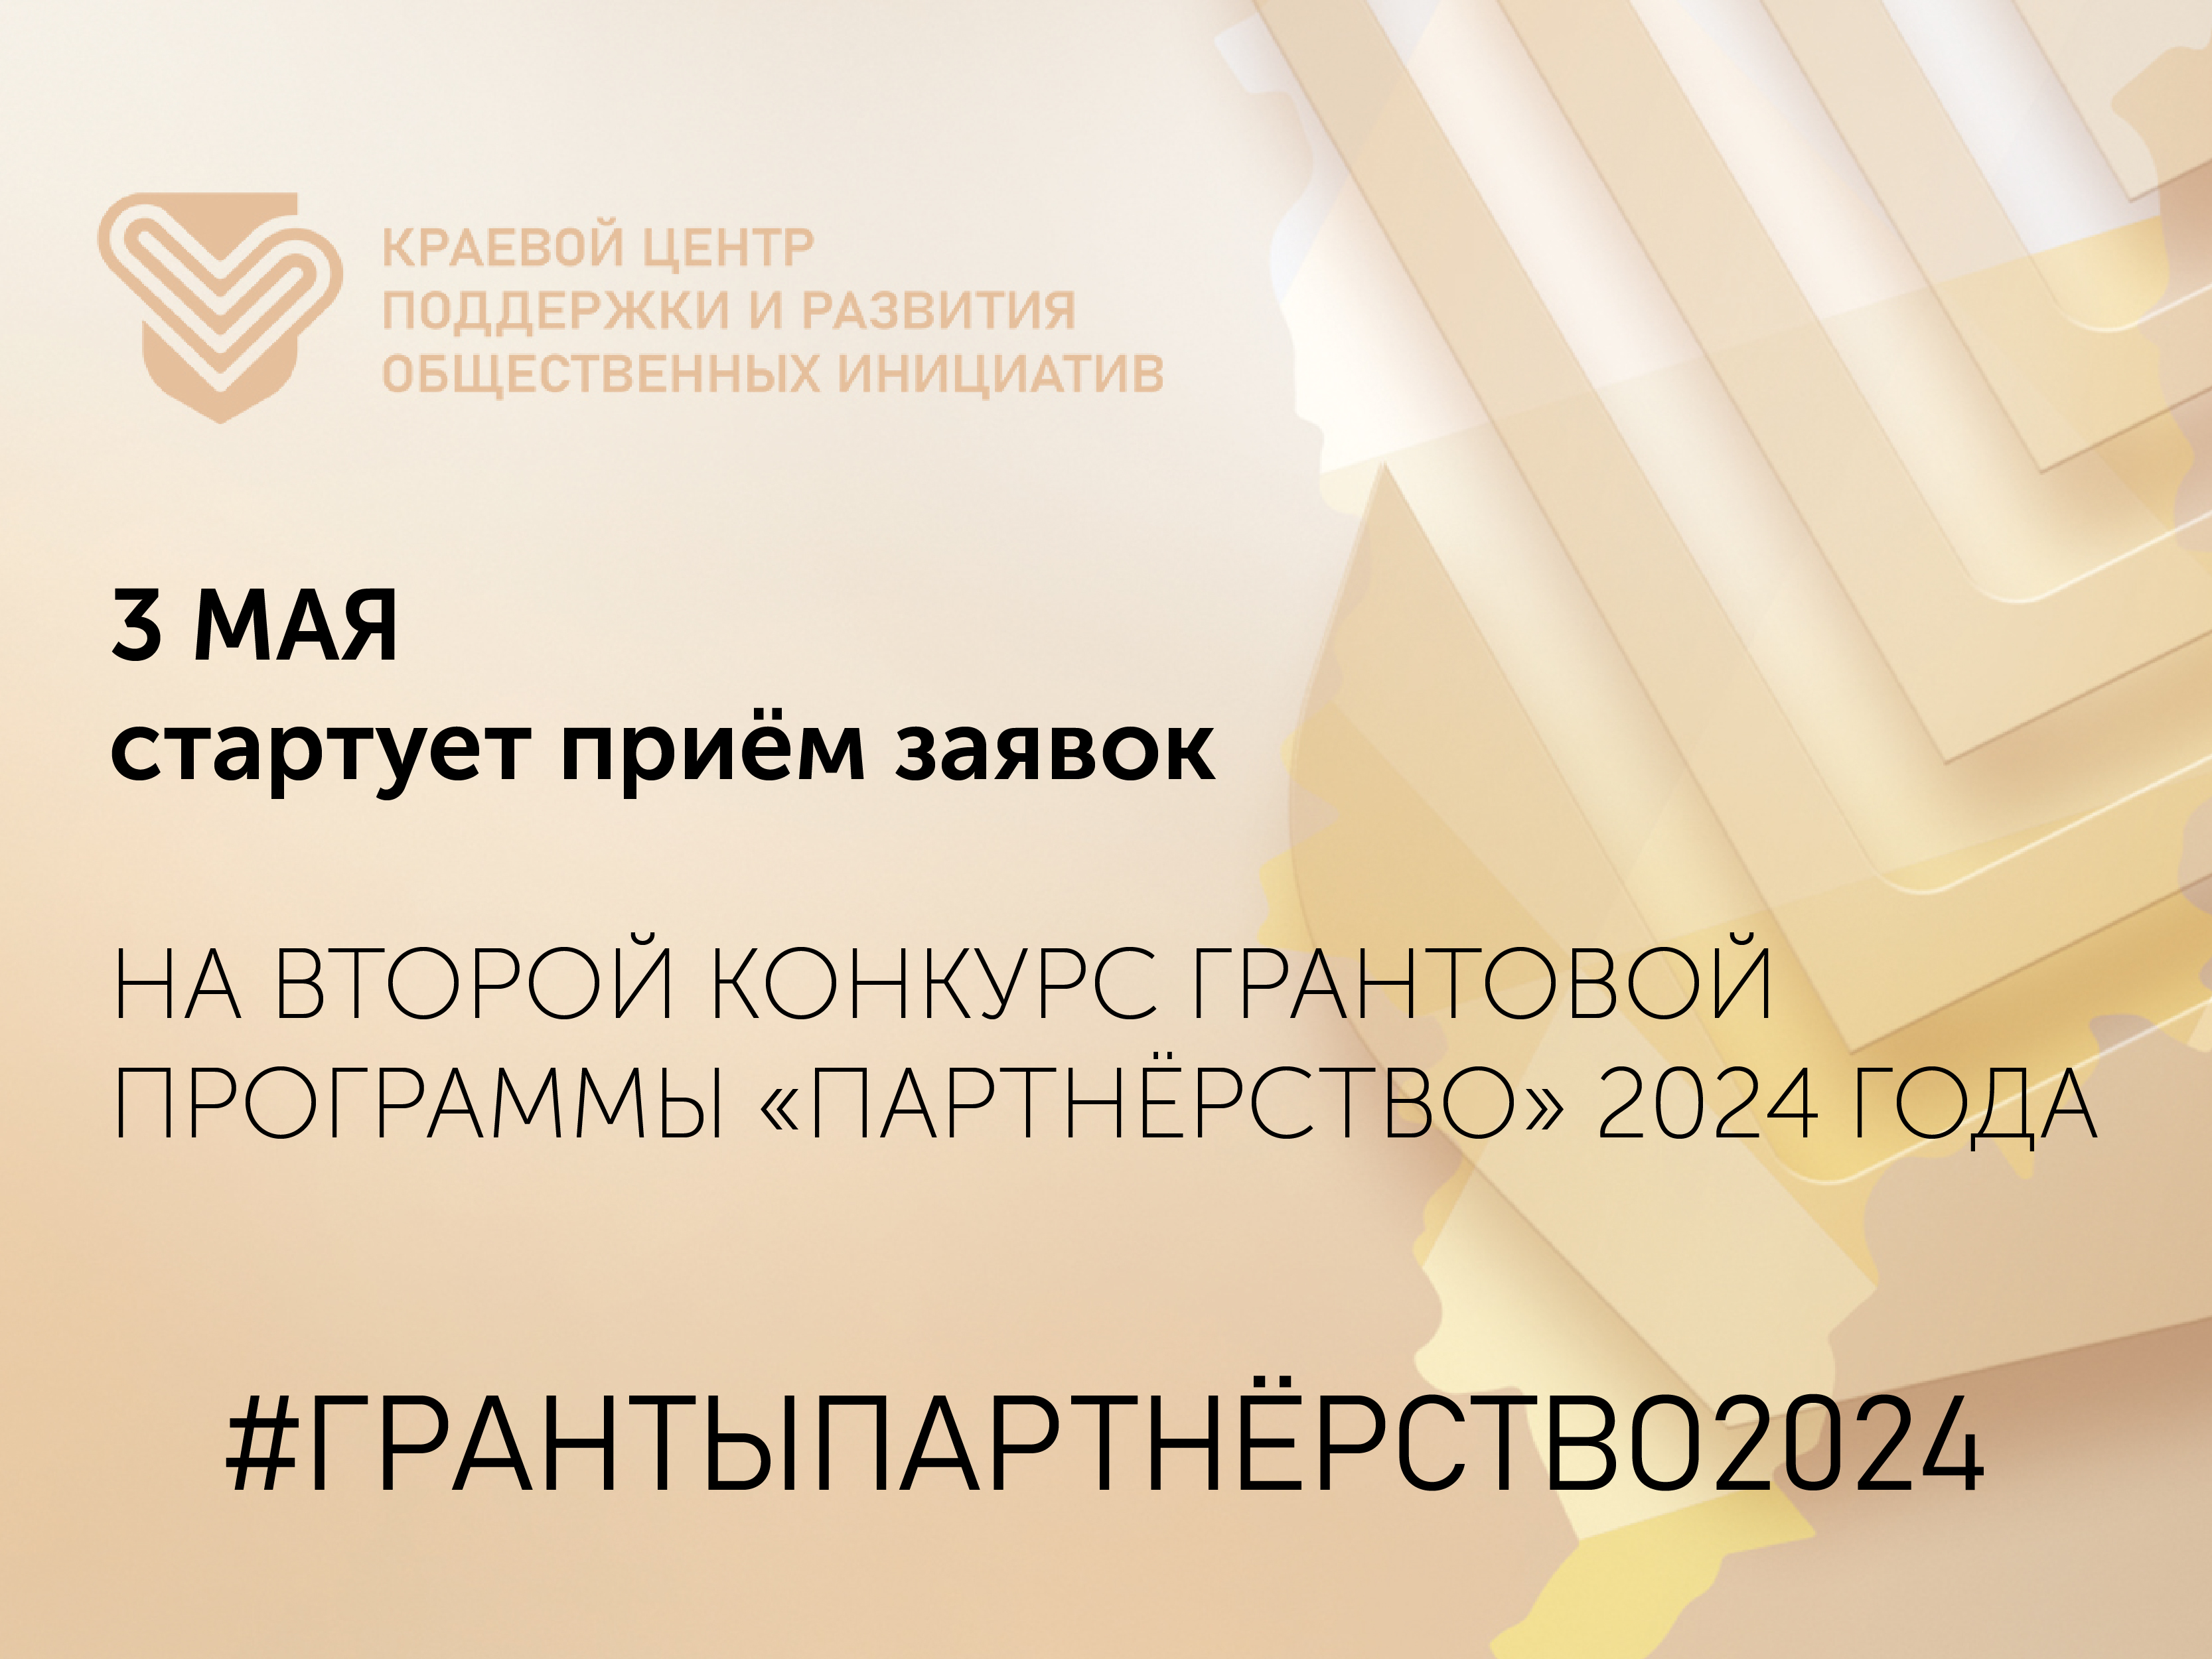 3 мая стартует приём заявок на второй конкурс грантовой программы "Партнерство" 2024